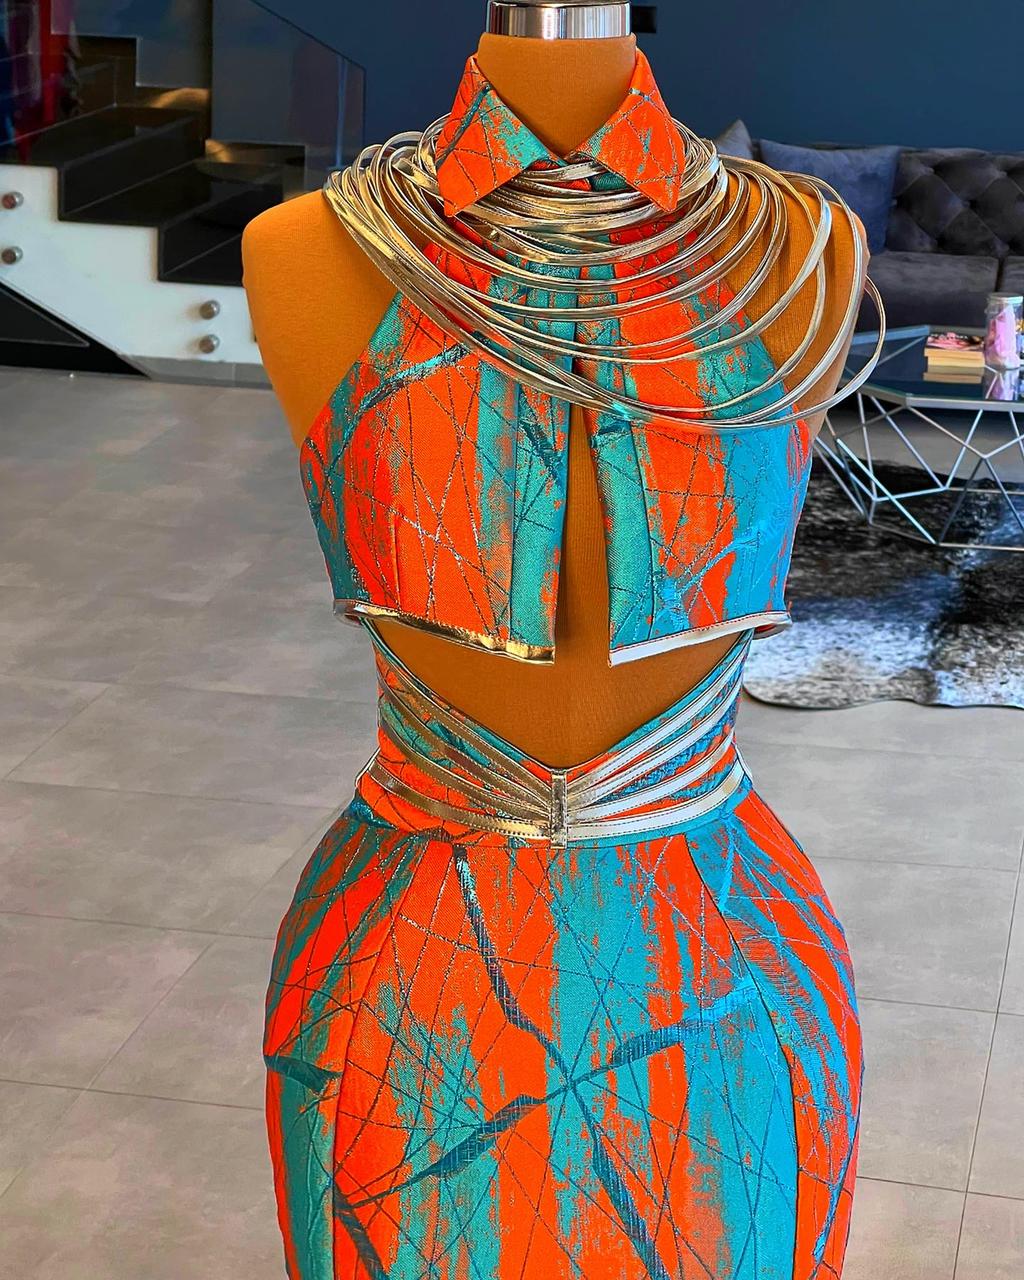 Norah Multicolour Beautiful 2-Piece Evening Dress